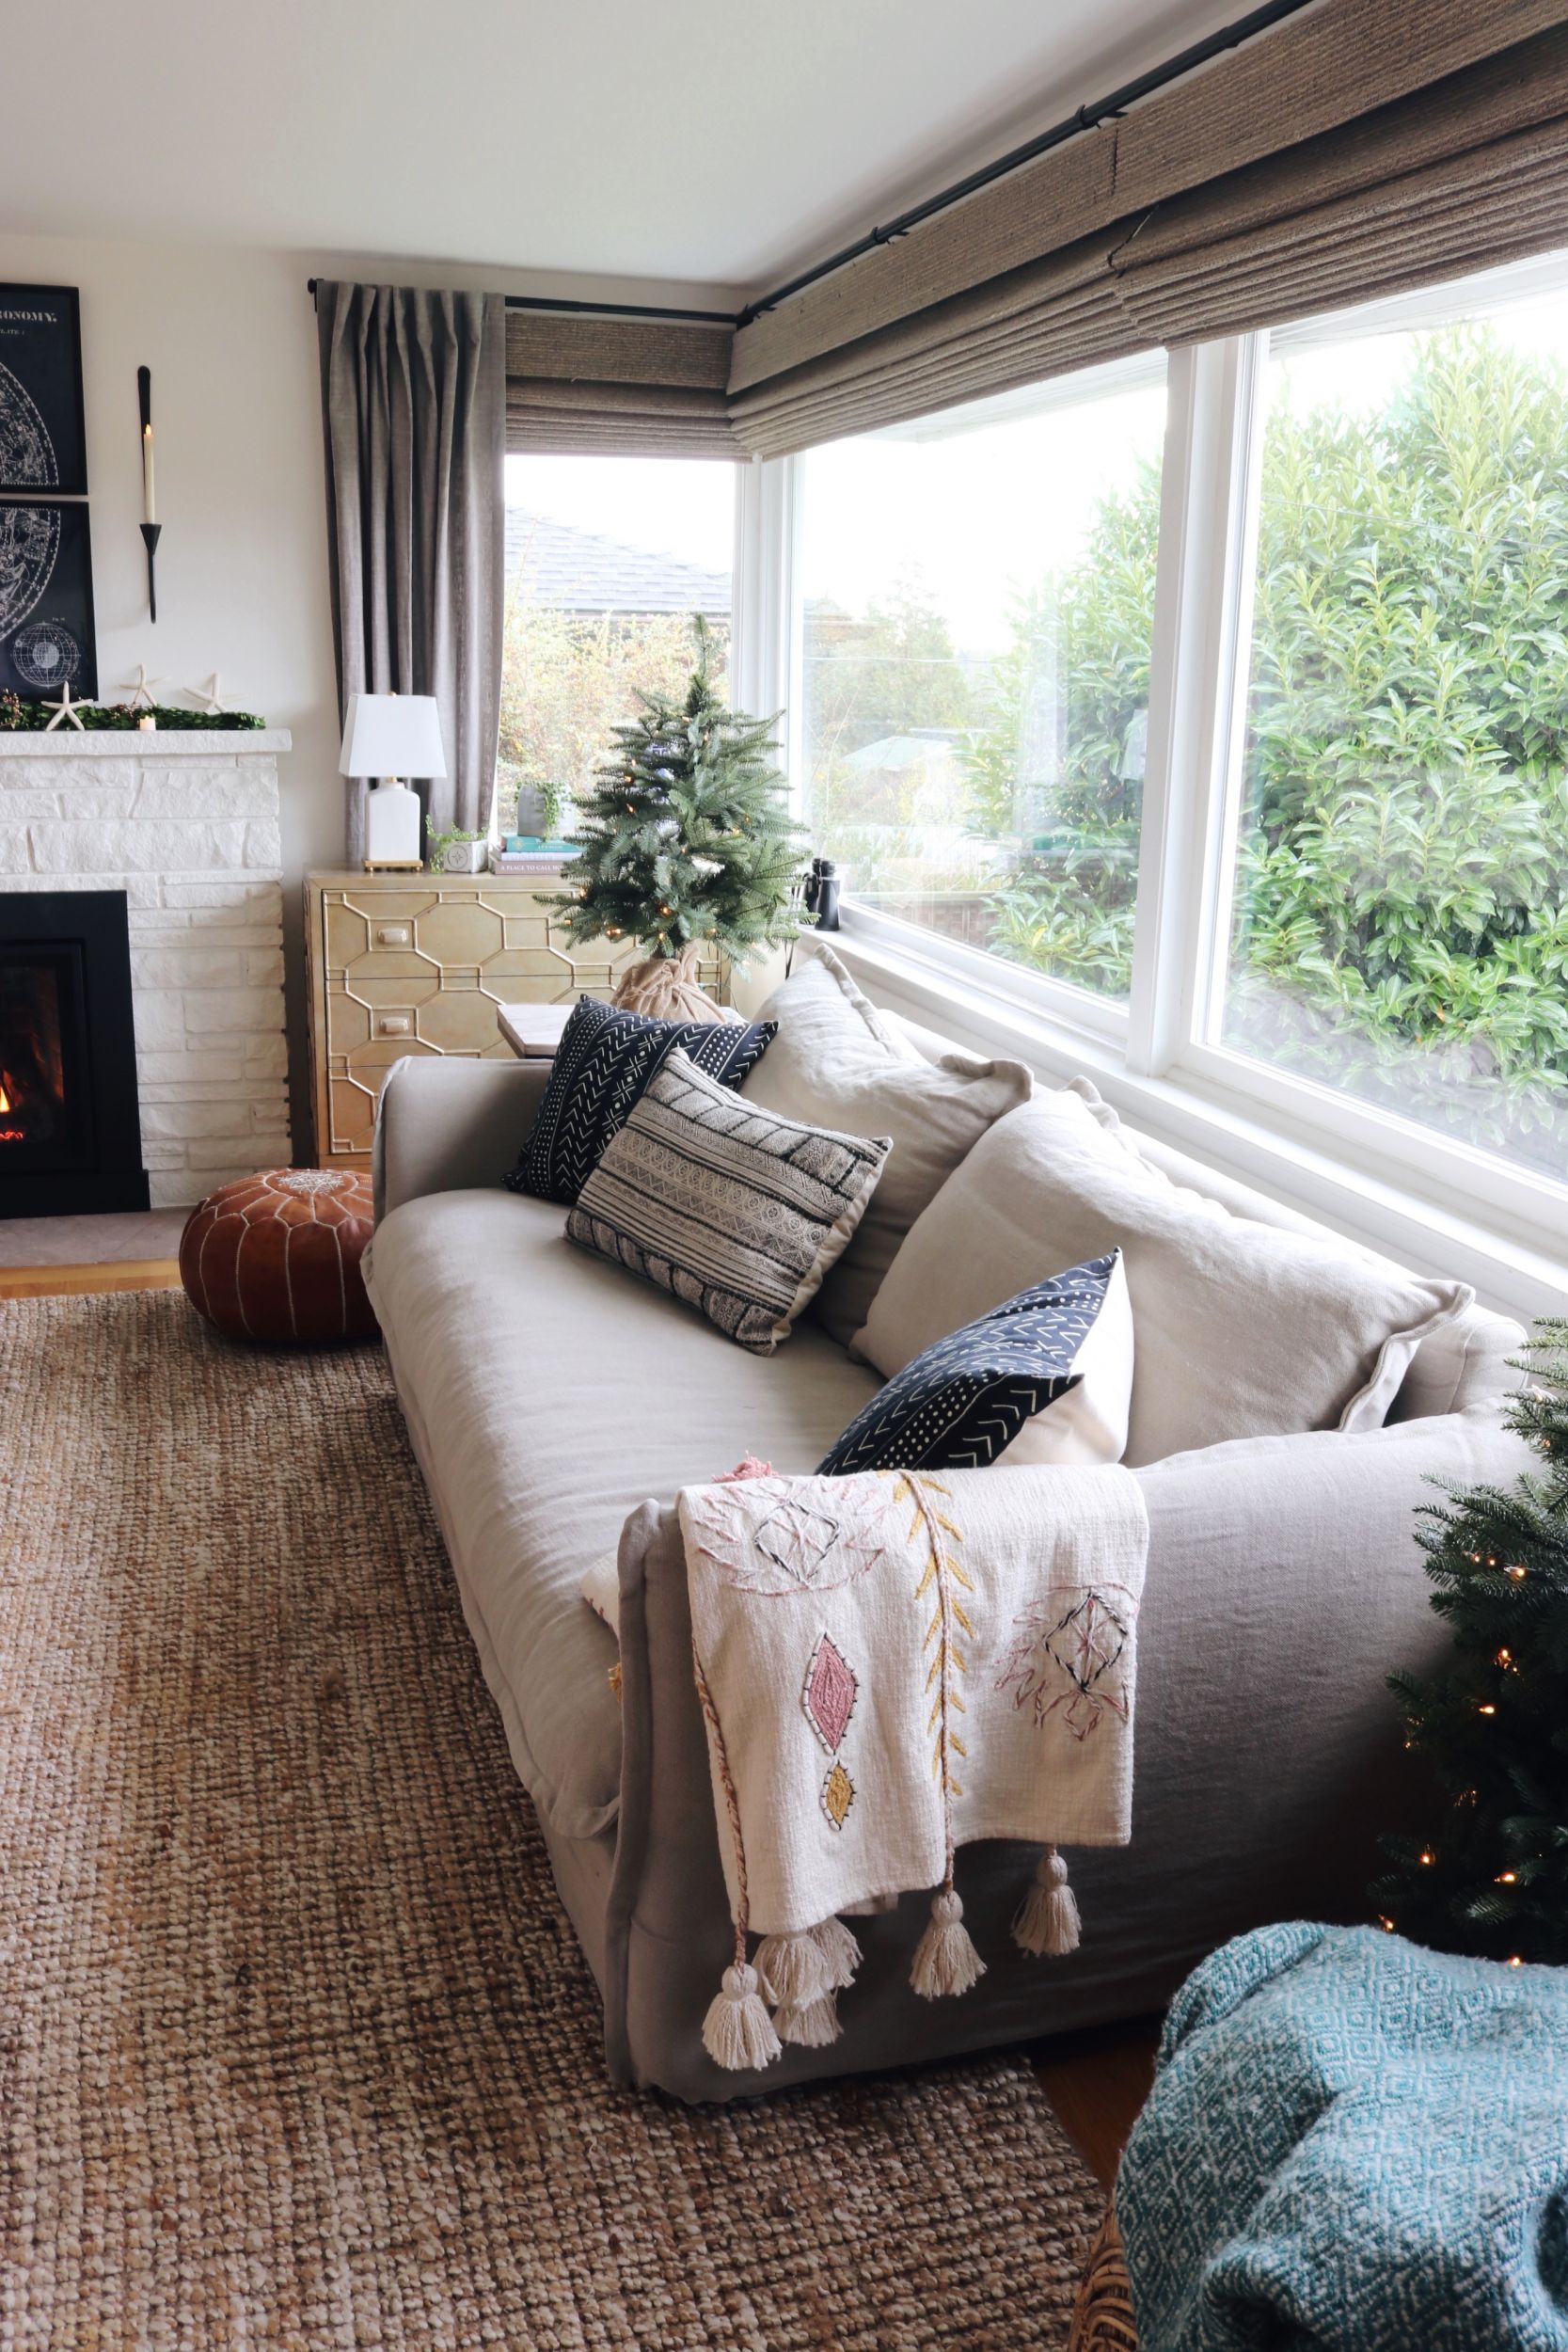 New Linen Slipcovered Sofa in the Living Room!